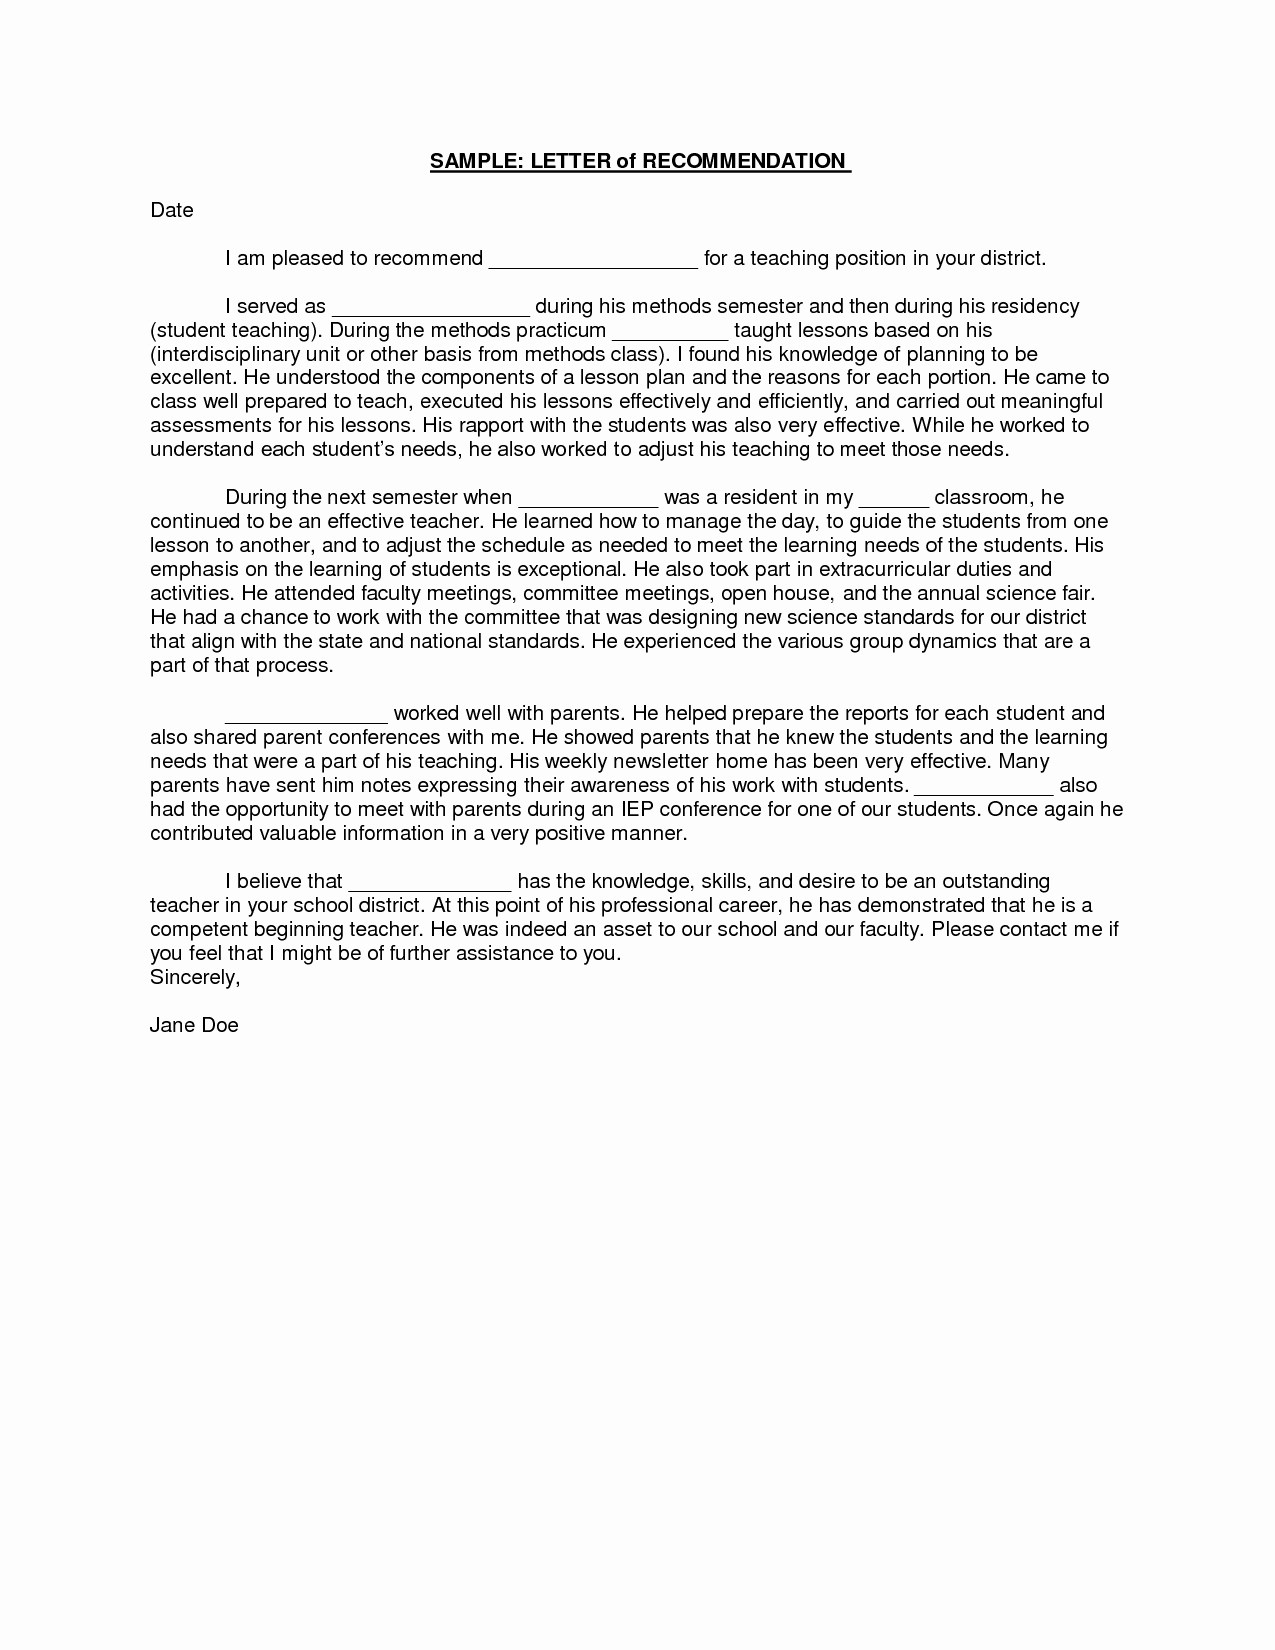 Recommendation Letter for Teacher Elegant Sample Student Teacher Re Mendation Letters V9nqmvof